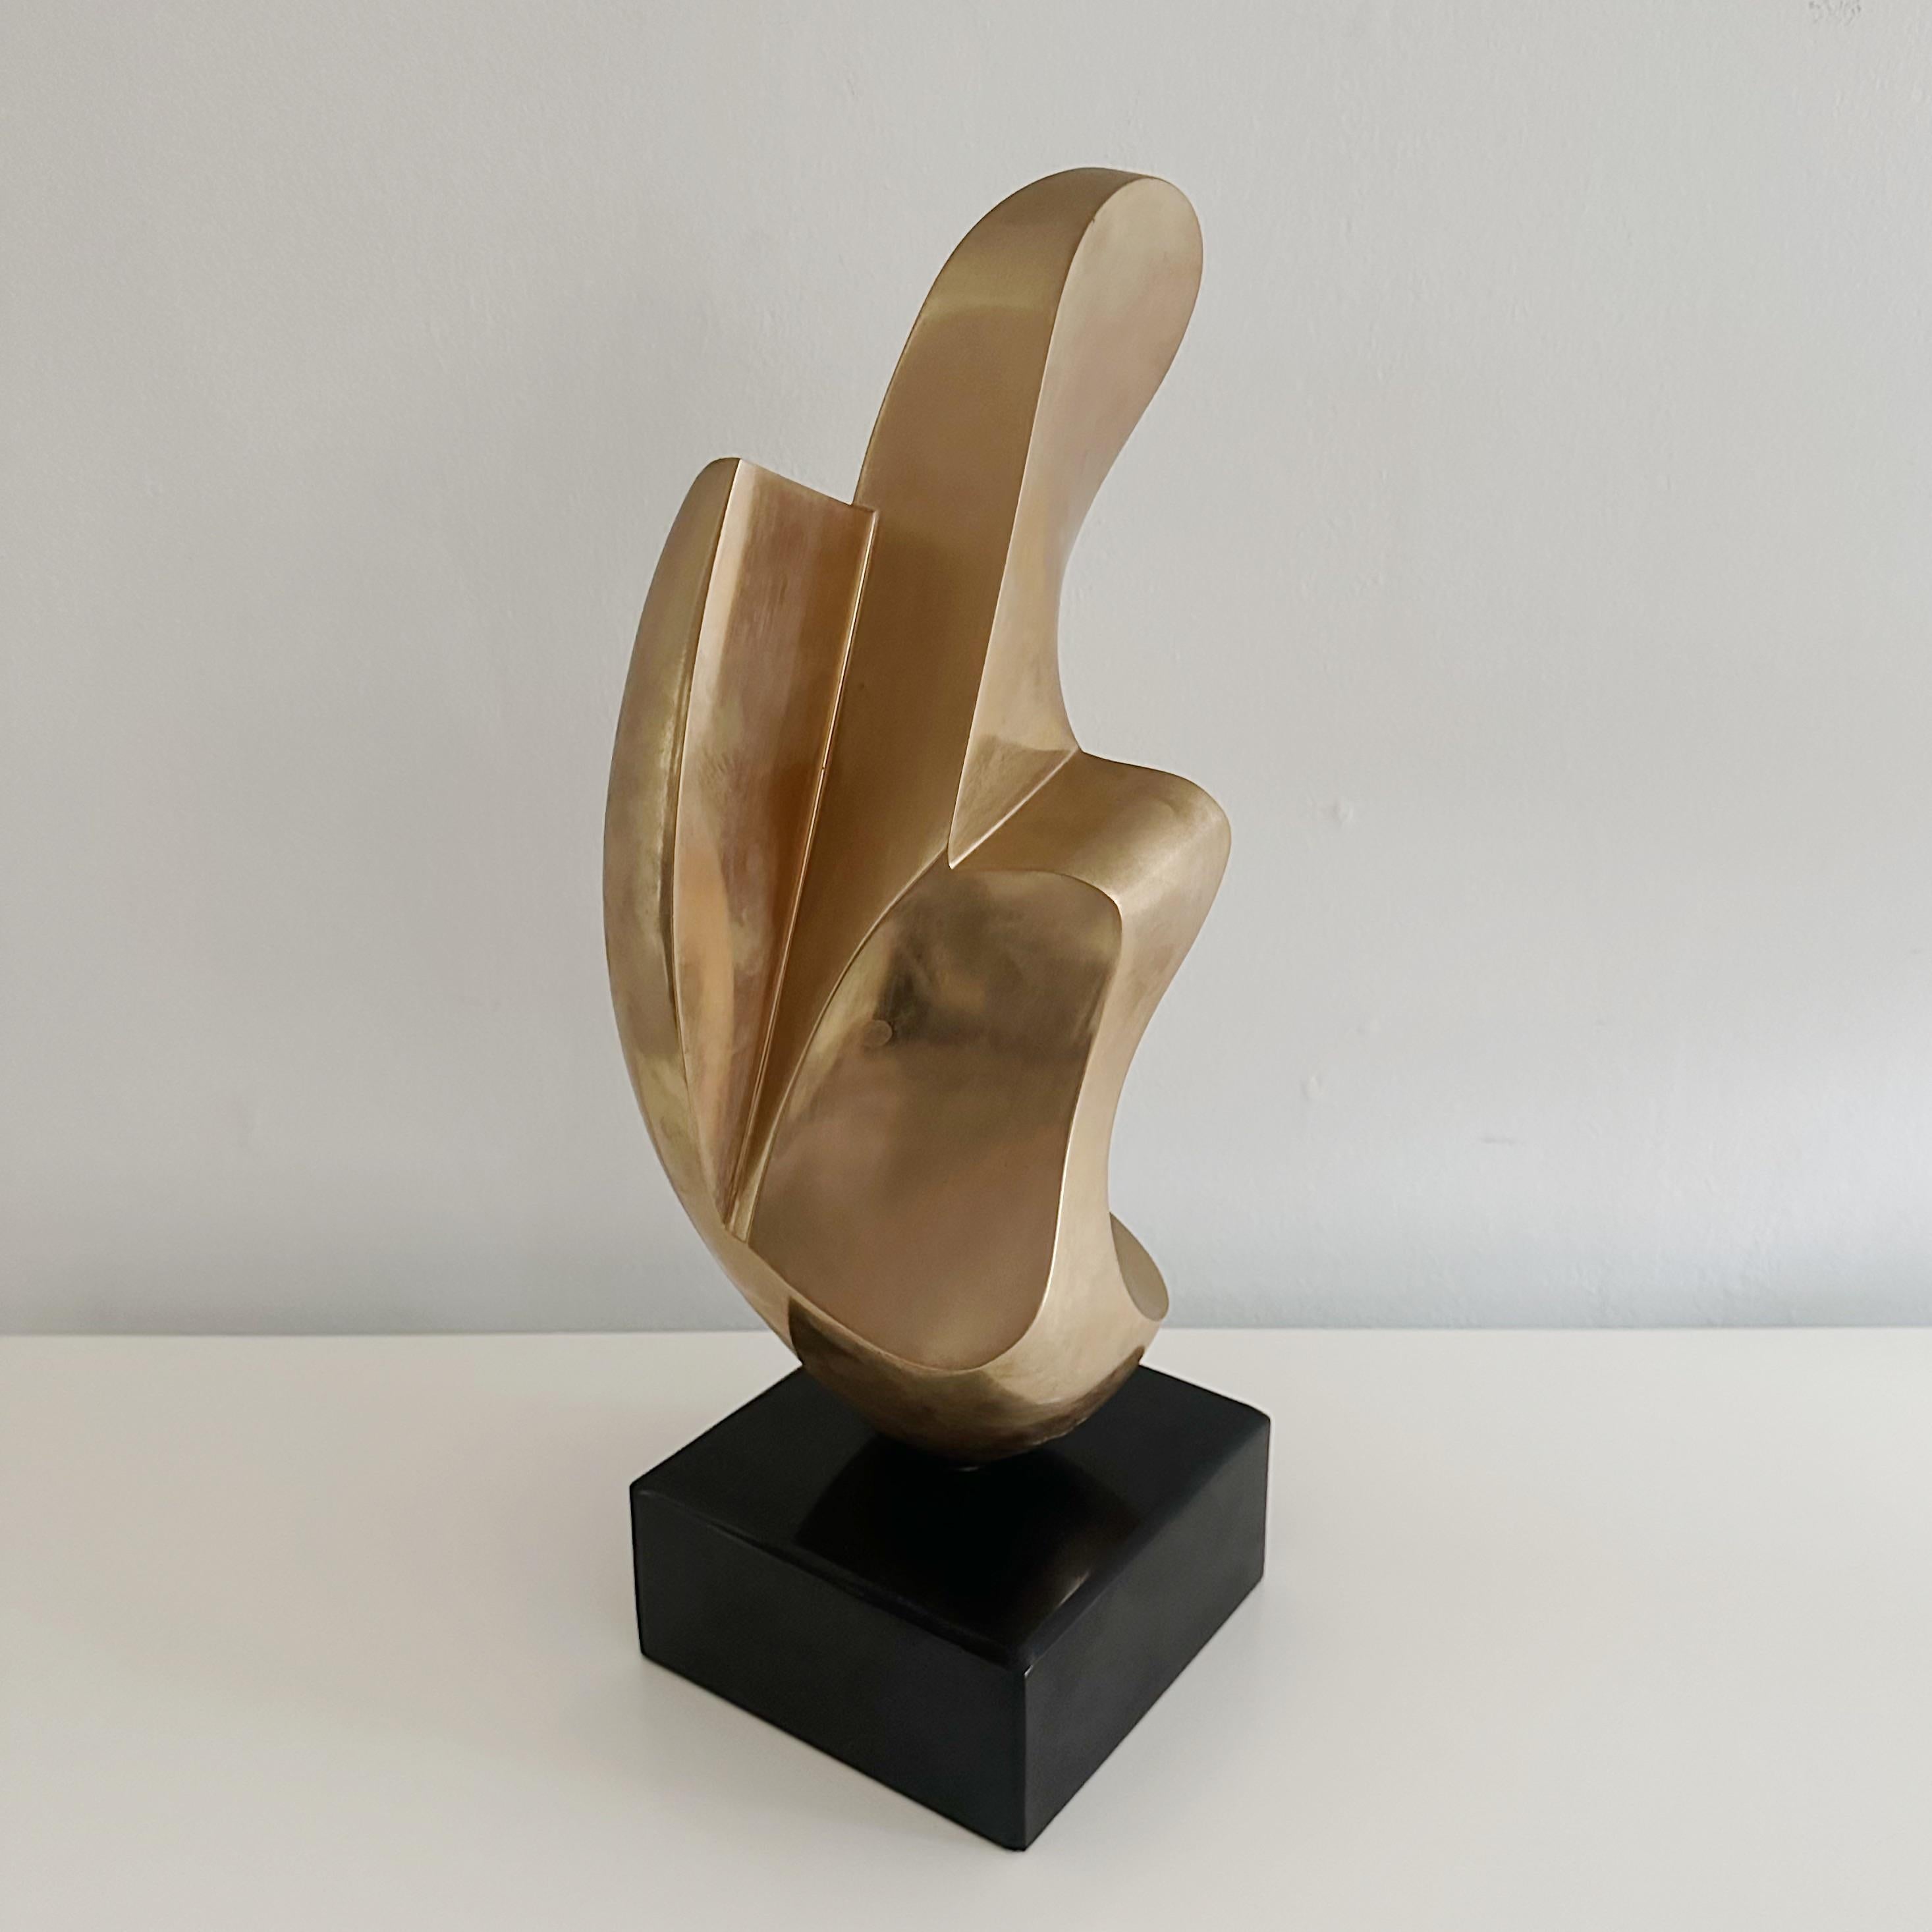 Canadian  Antonio Grediaga Kieff (Born 1936) Abstract Solid Bronze Sculpture Circa 1974